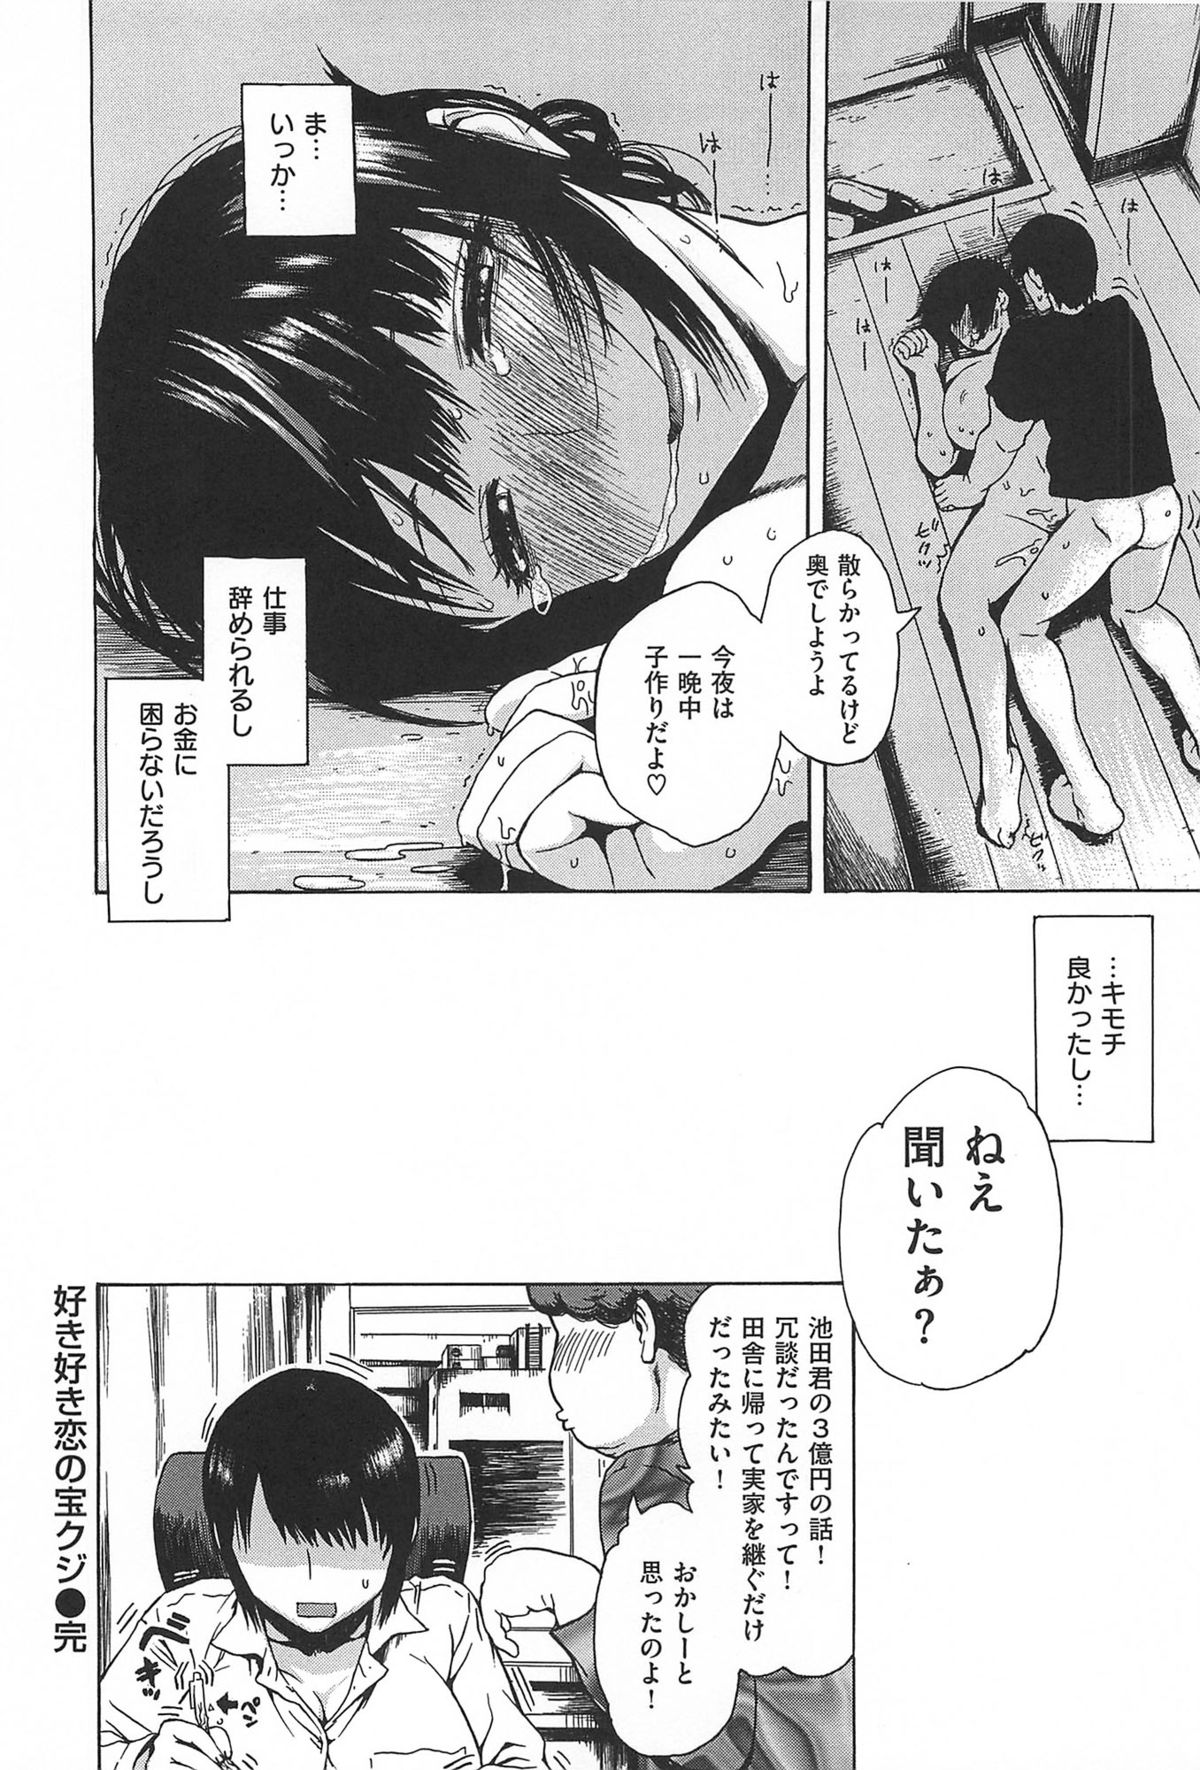 (成年コミック) [石川シスケ] キツデレ [2014-08-02]